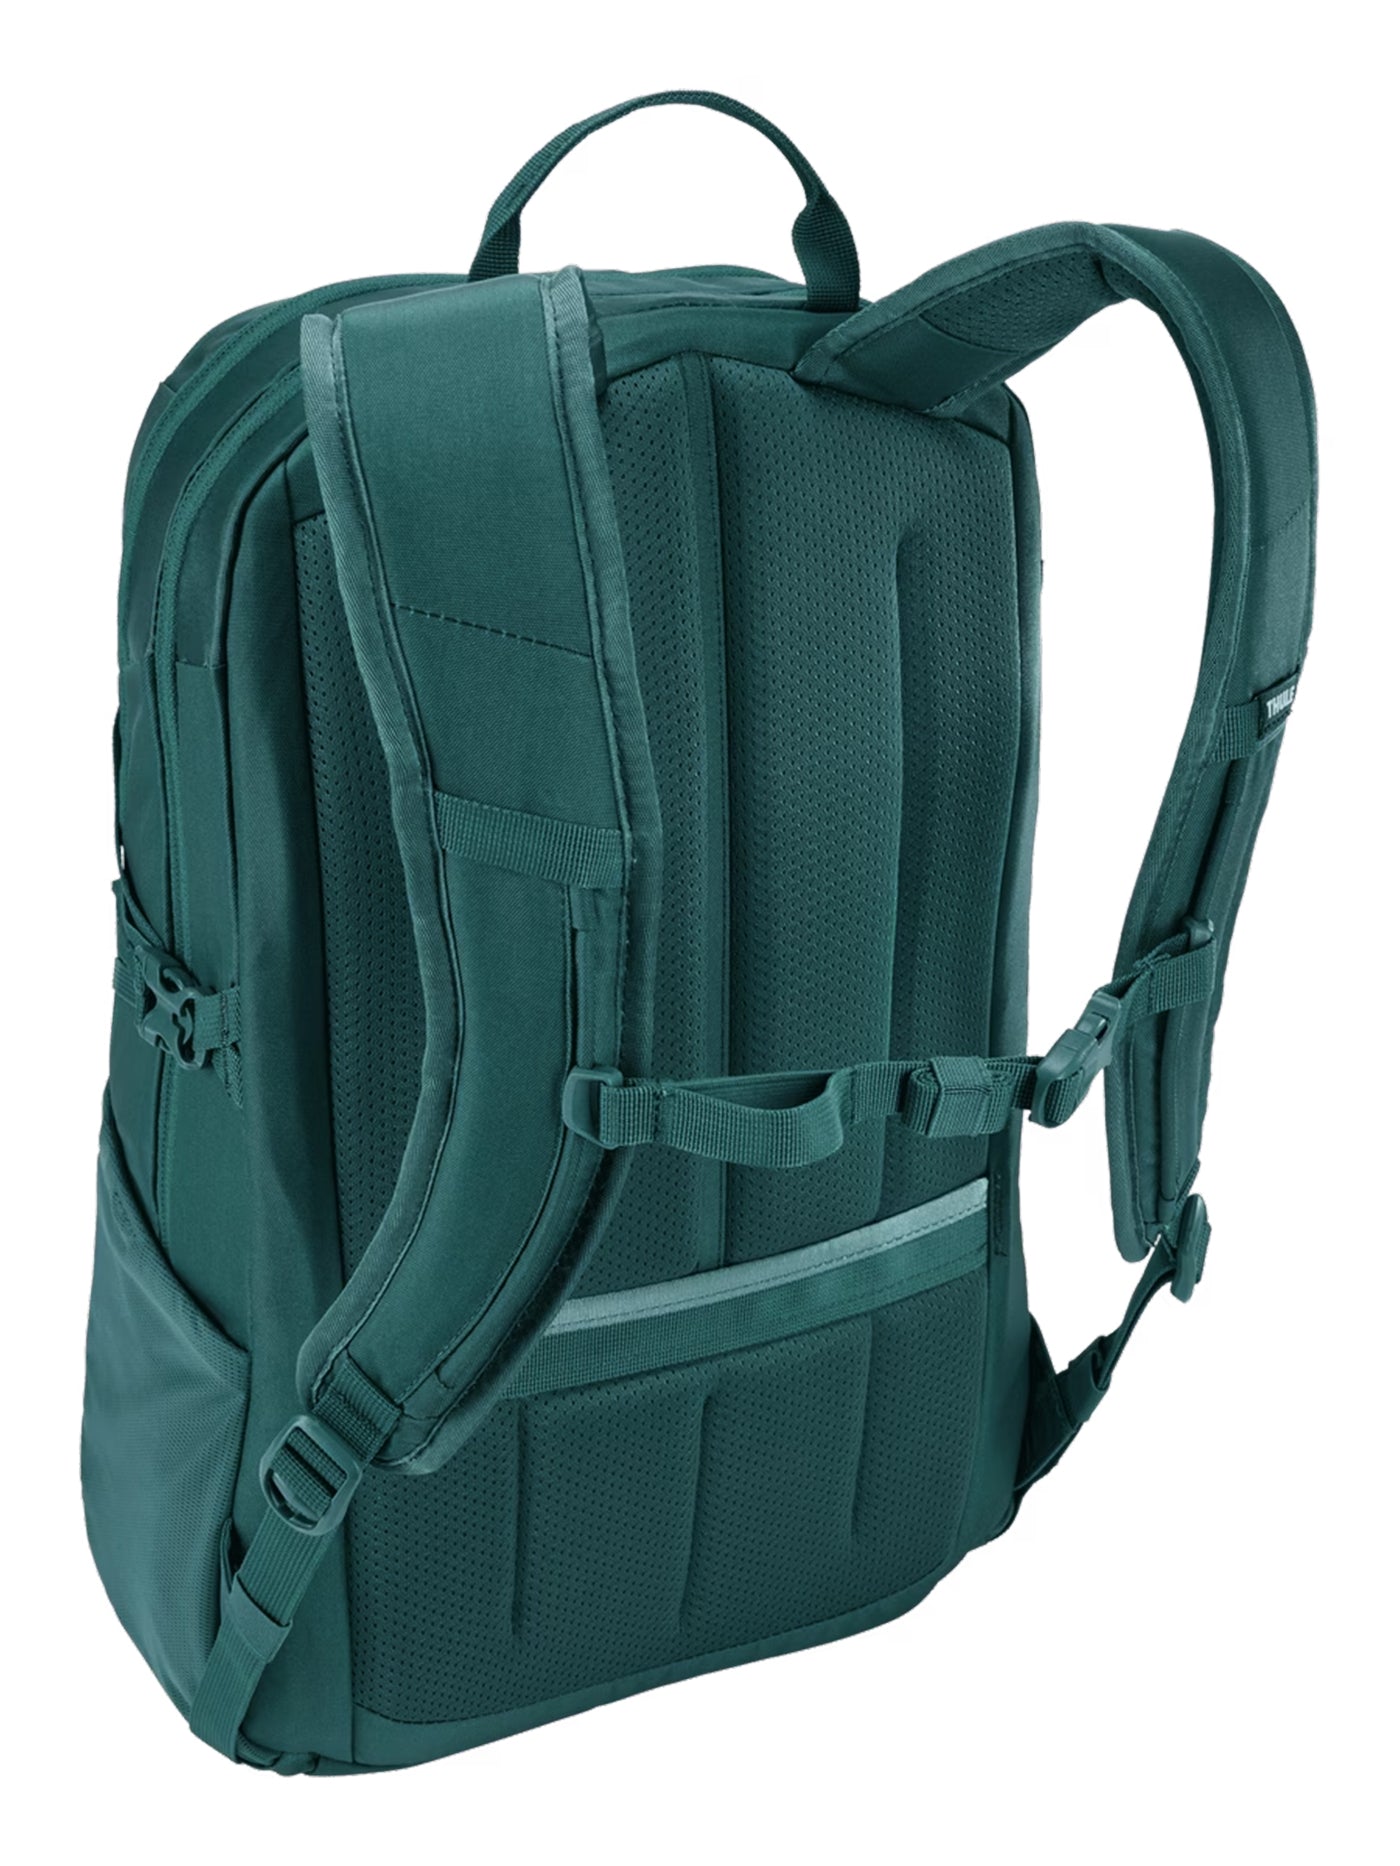 Thule Enroute 23L Mallard Green Backpack